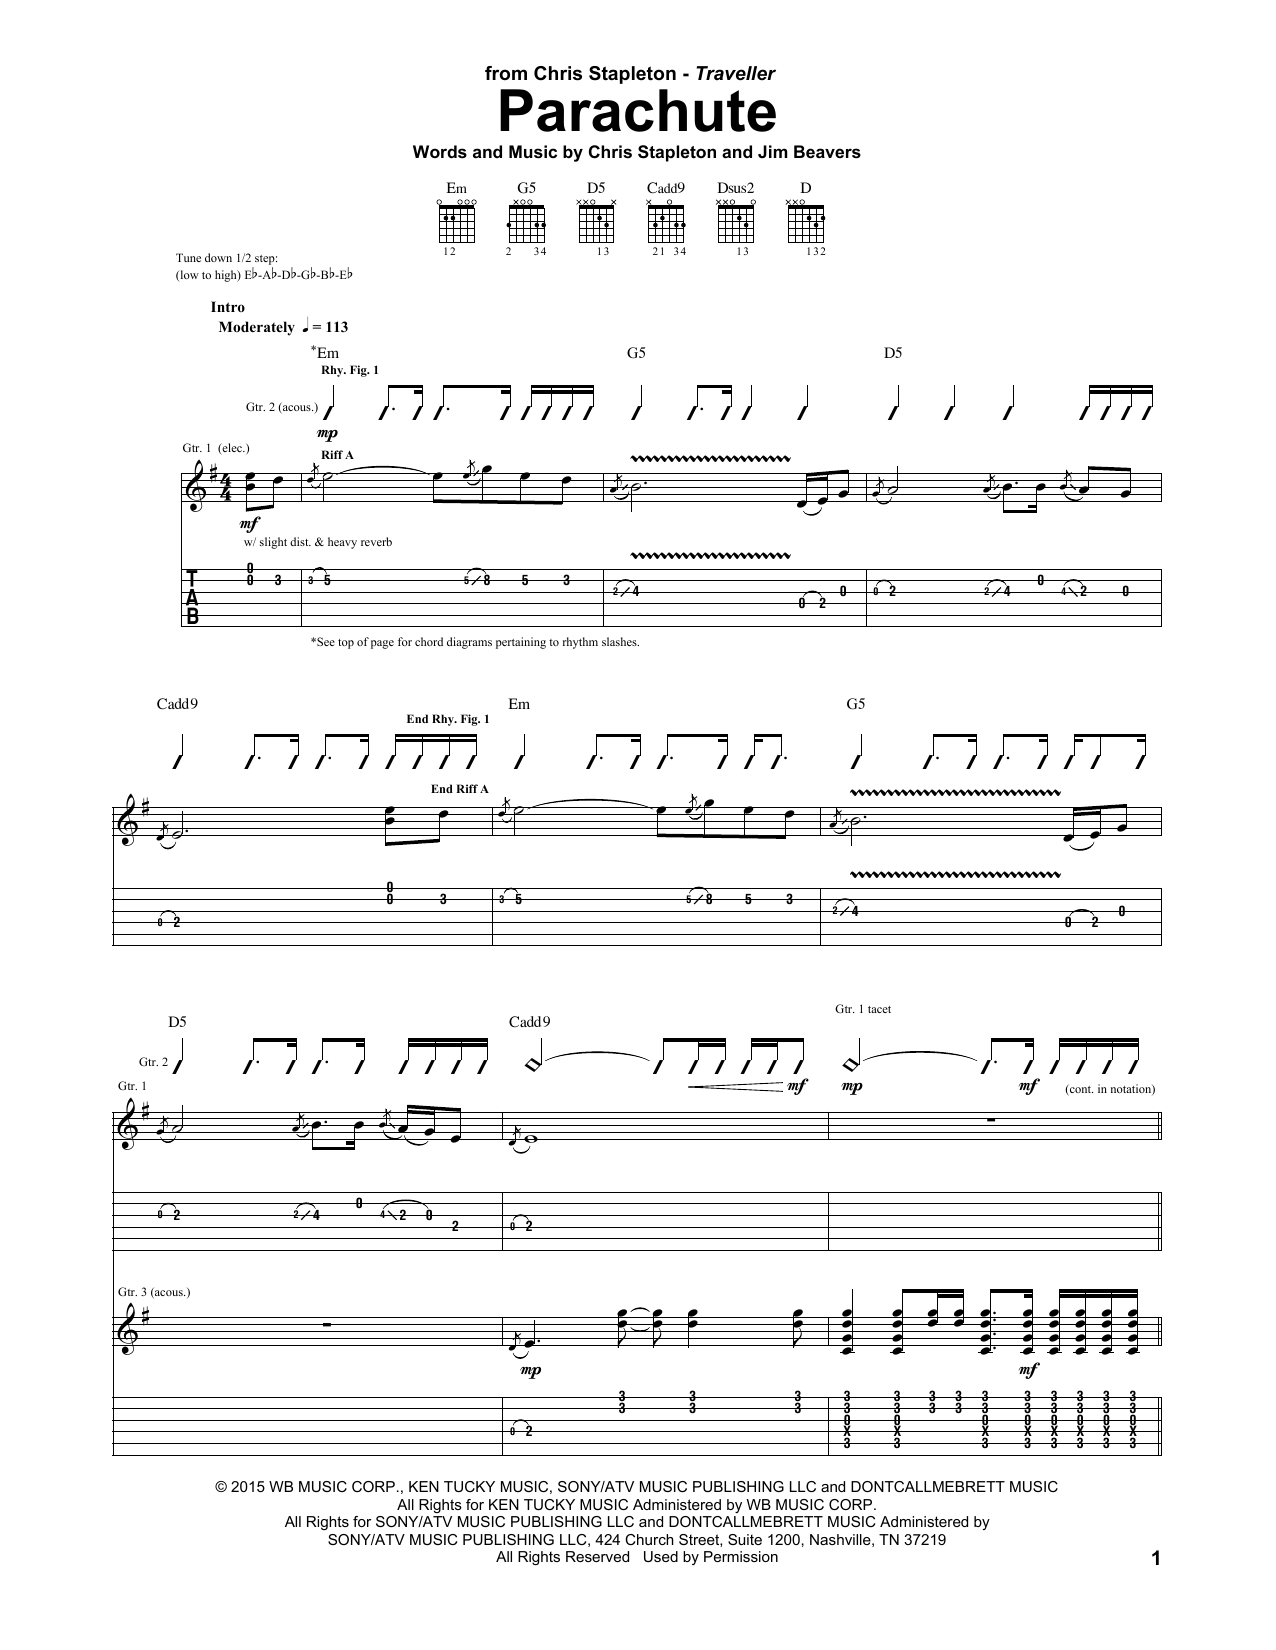 Chris Stapleton Parachute Sheet Music Notes & Chords for Guitar Chords/Lyrics - Download or Print PDF